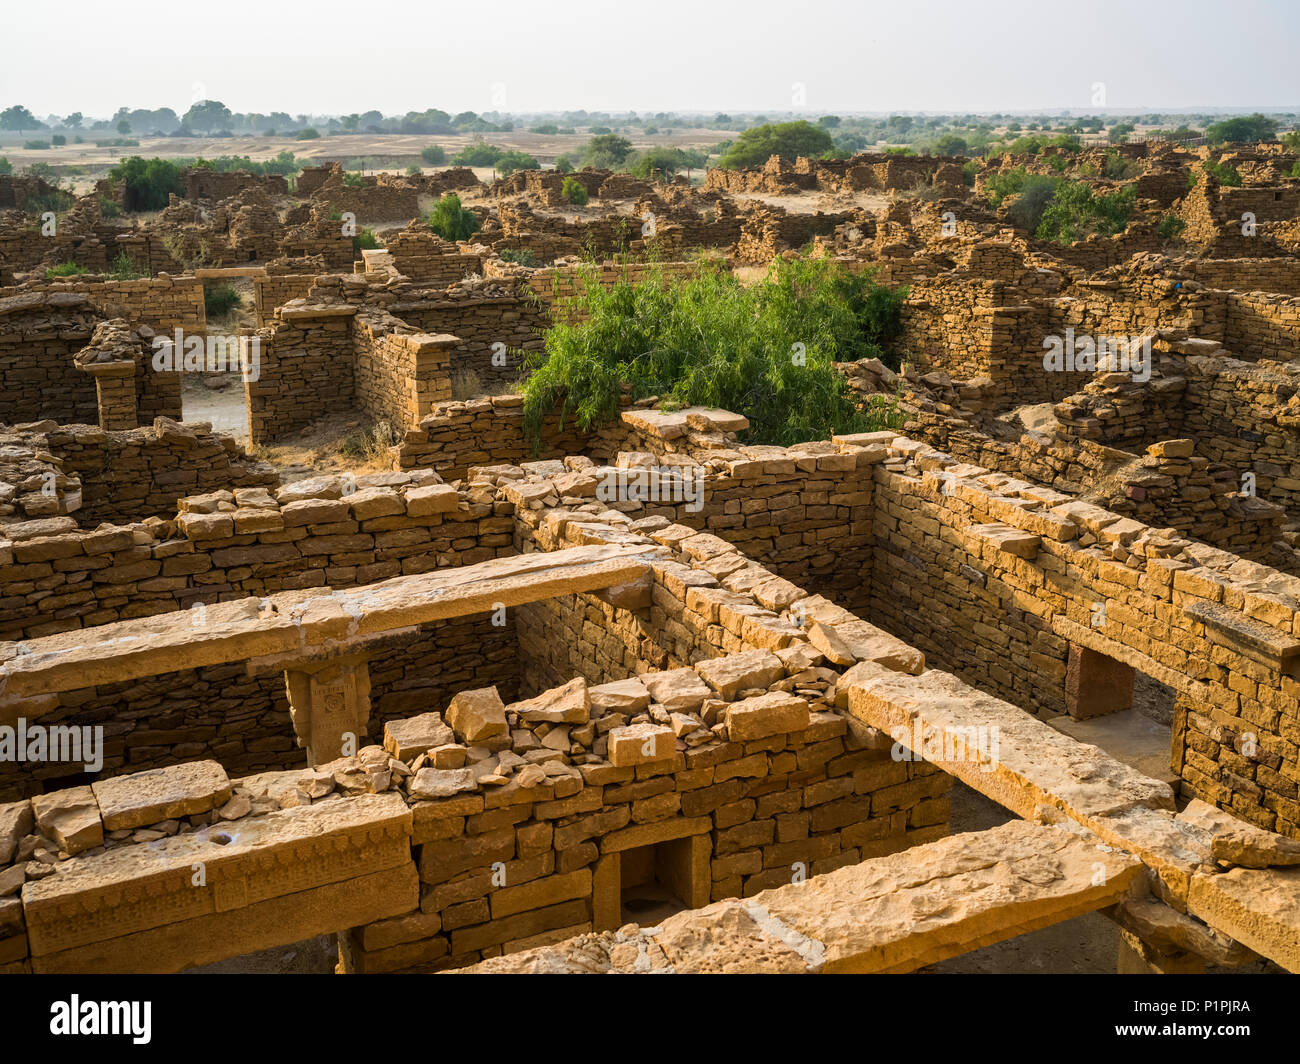 Village abandonné dans le district de Jaisalmer Rajasthan. Kuldhara a acquis une réputation de site hanté ; Jiyai, Rajasthan, Inde Banque D'Images